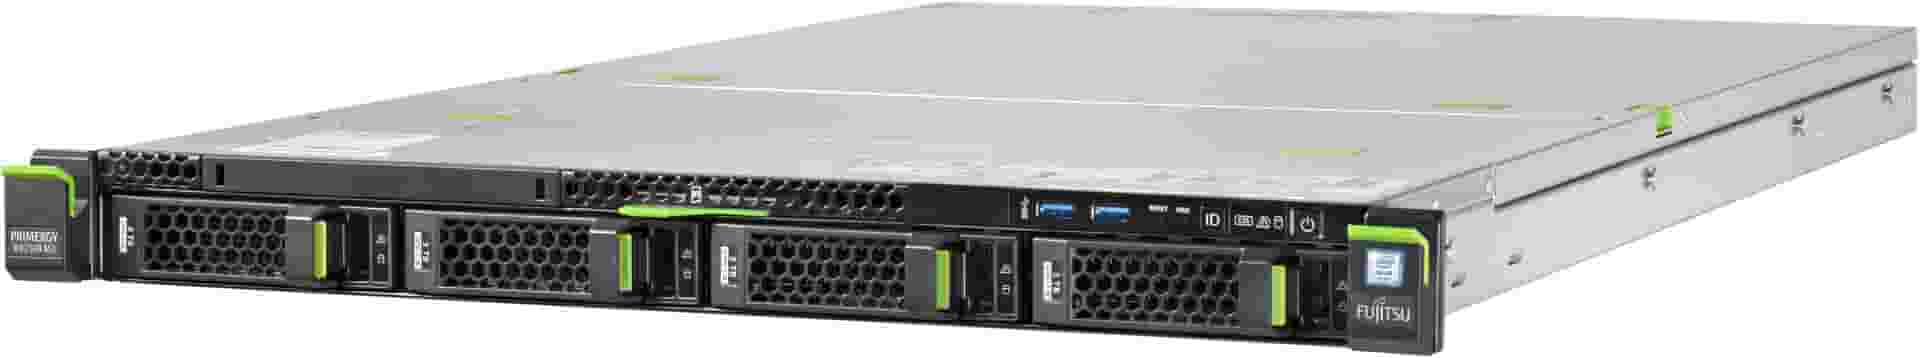 Стоечный сервер Fujitsu Primergy PY RX2530 M1 5ая конфигурация-1